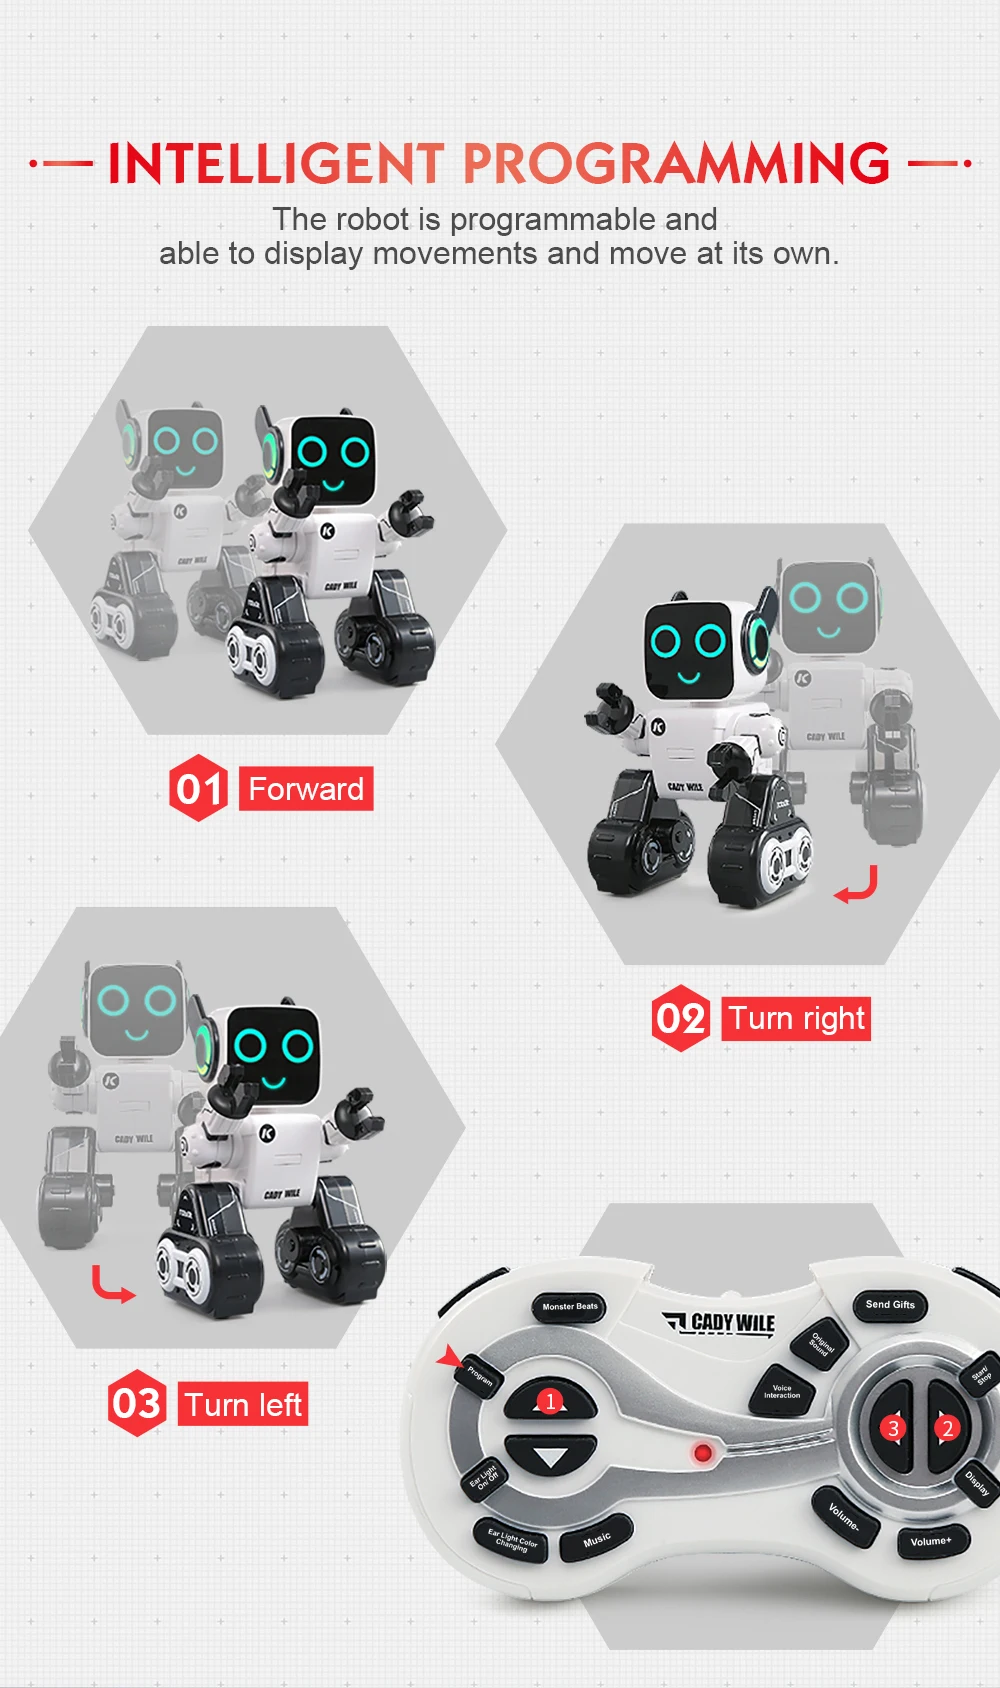 JJRC RC робот интеллектуальная программа Рождественский подарок игрушки интерактивное управление звуком голосовая запись оповещение пункт передача вставка монеты танец